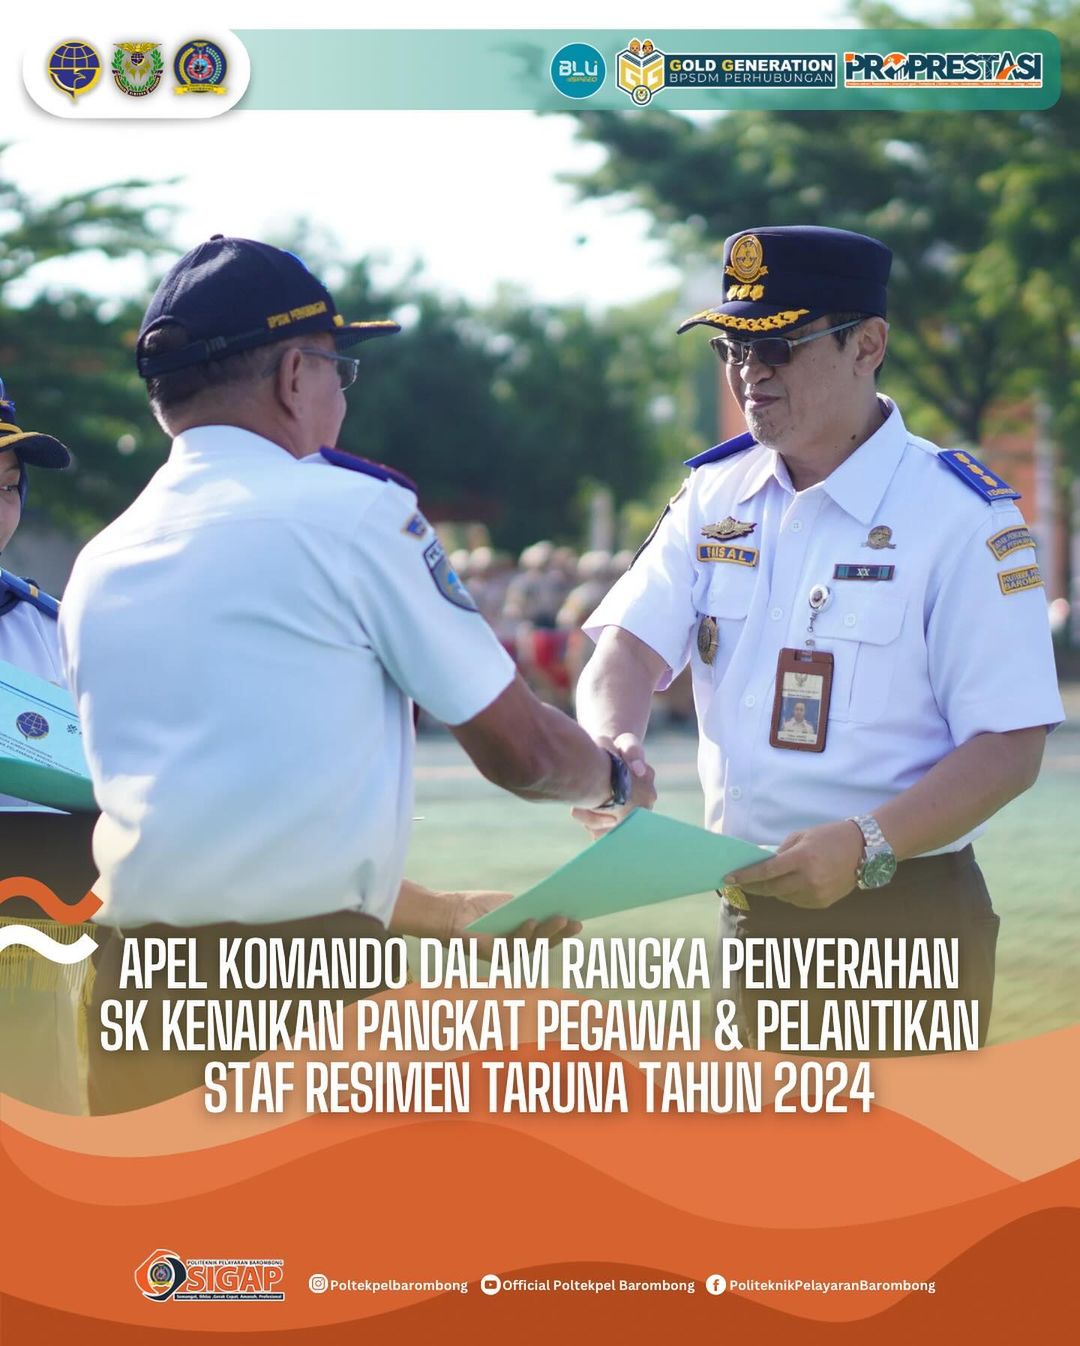 Apel Komando Dalam Rangka Penyerahan SK Kenaikan Pangkat Pegawai & Pelantikan Staff Resimen Taruna Tahun 2024, Selasa(23/04)